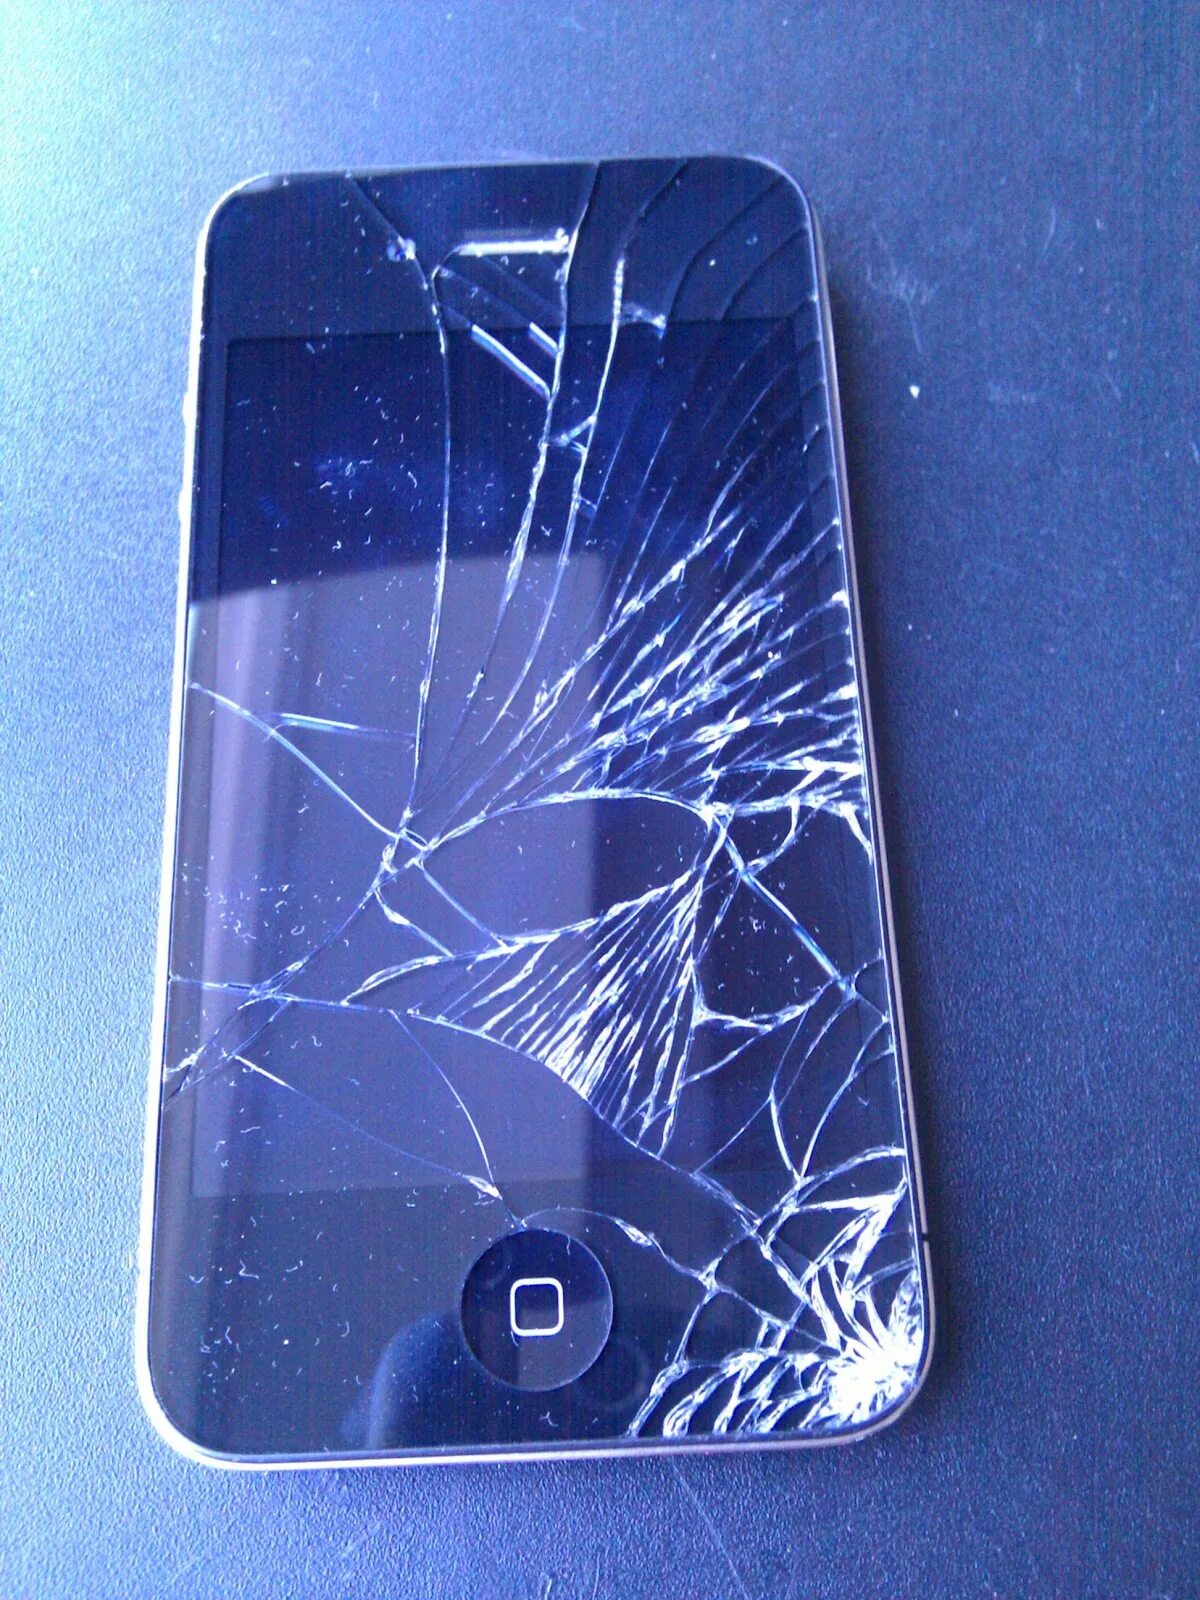 Разбитый айфон 4. Разбитый смартфон. Разбит экран смартфона. Смартфон с разбитым экраном. Разбивания телефонов